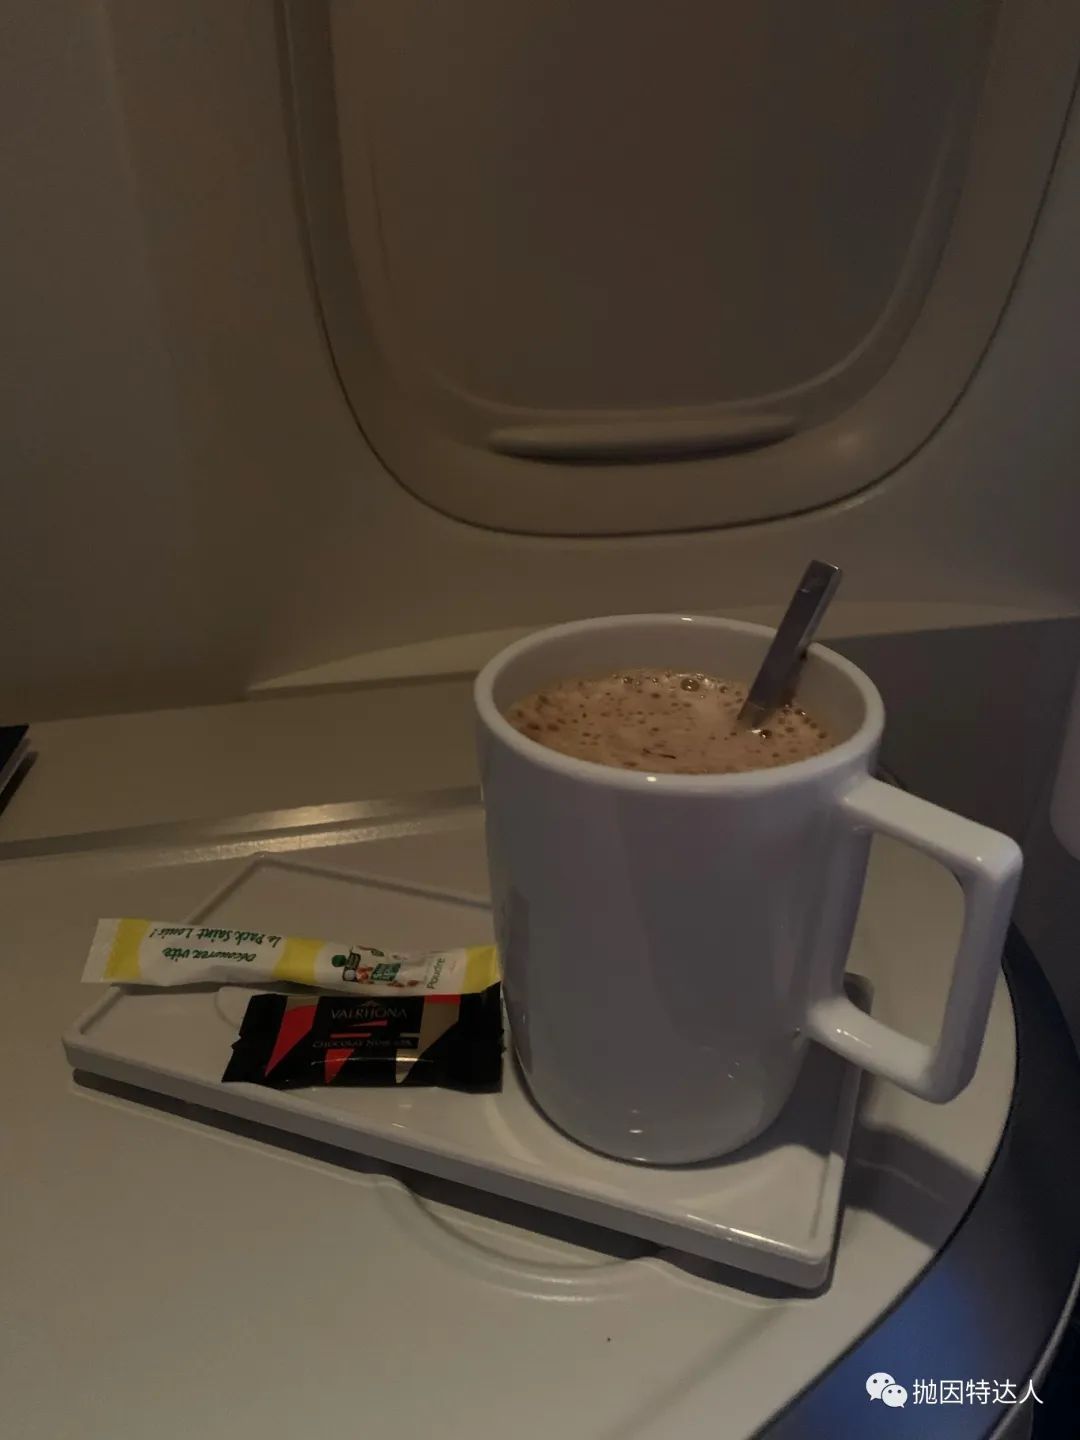 《飞行全程喝到醉生梦死 - 法国航空B77W（巴黎－香港）商务舱体验报告》